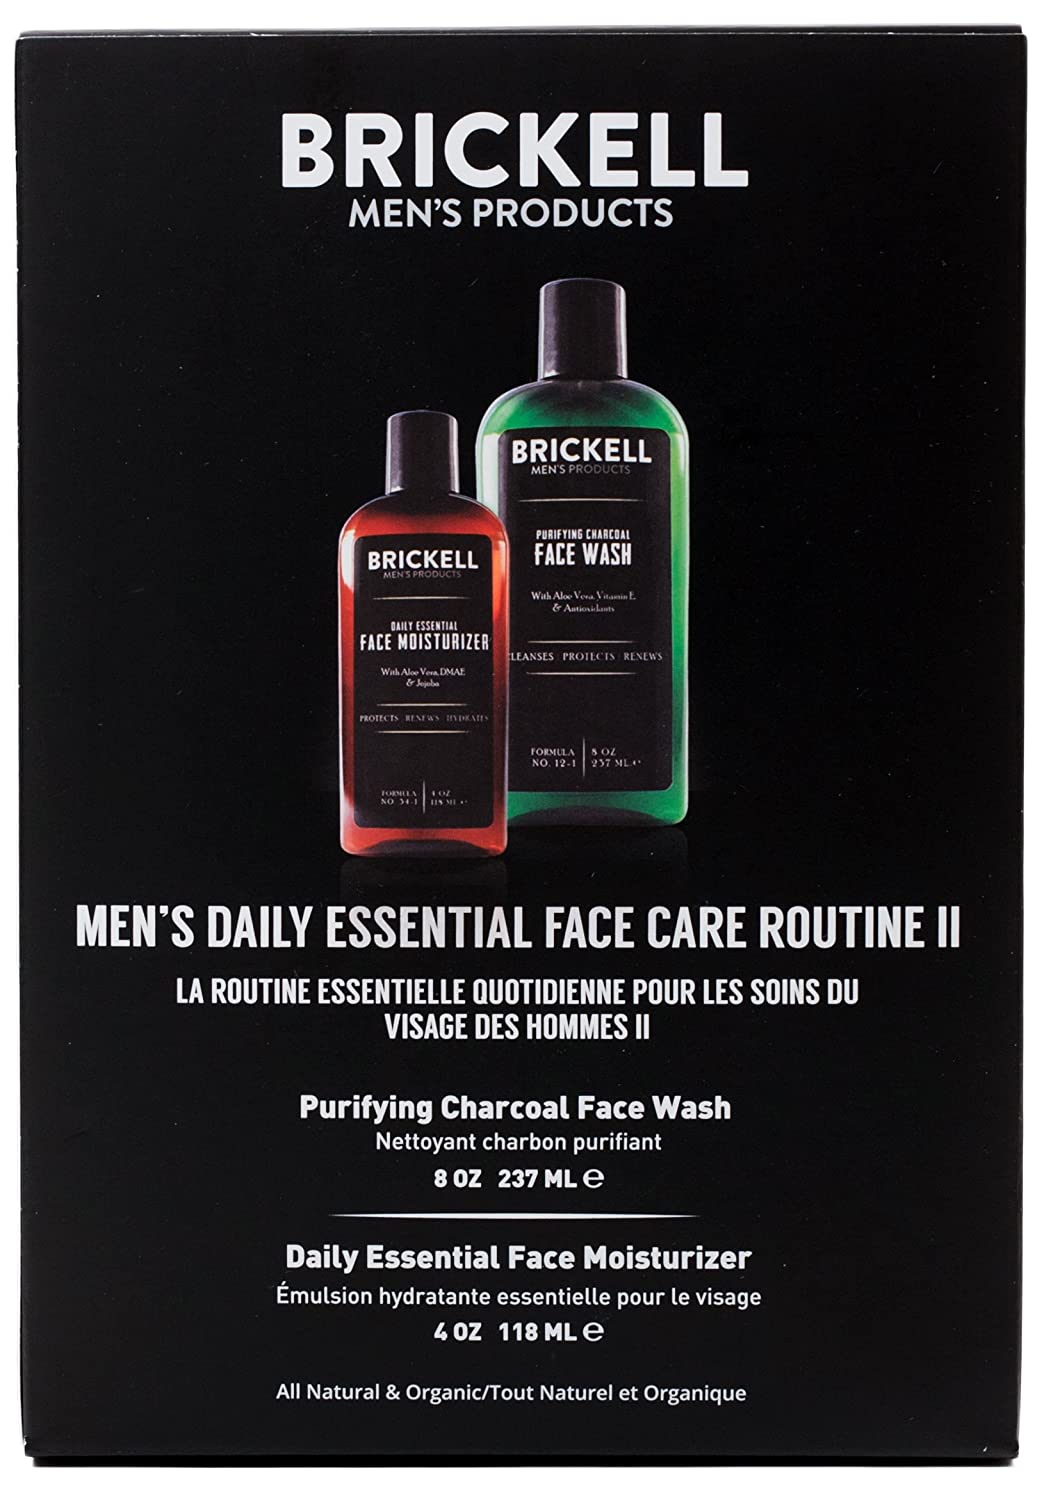 Daily essential facial moisturizer